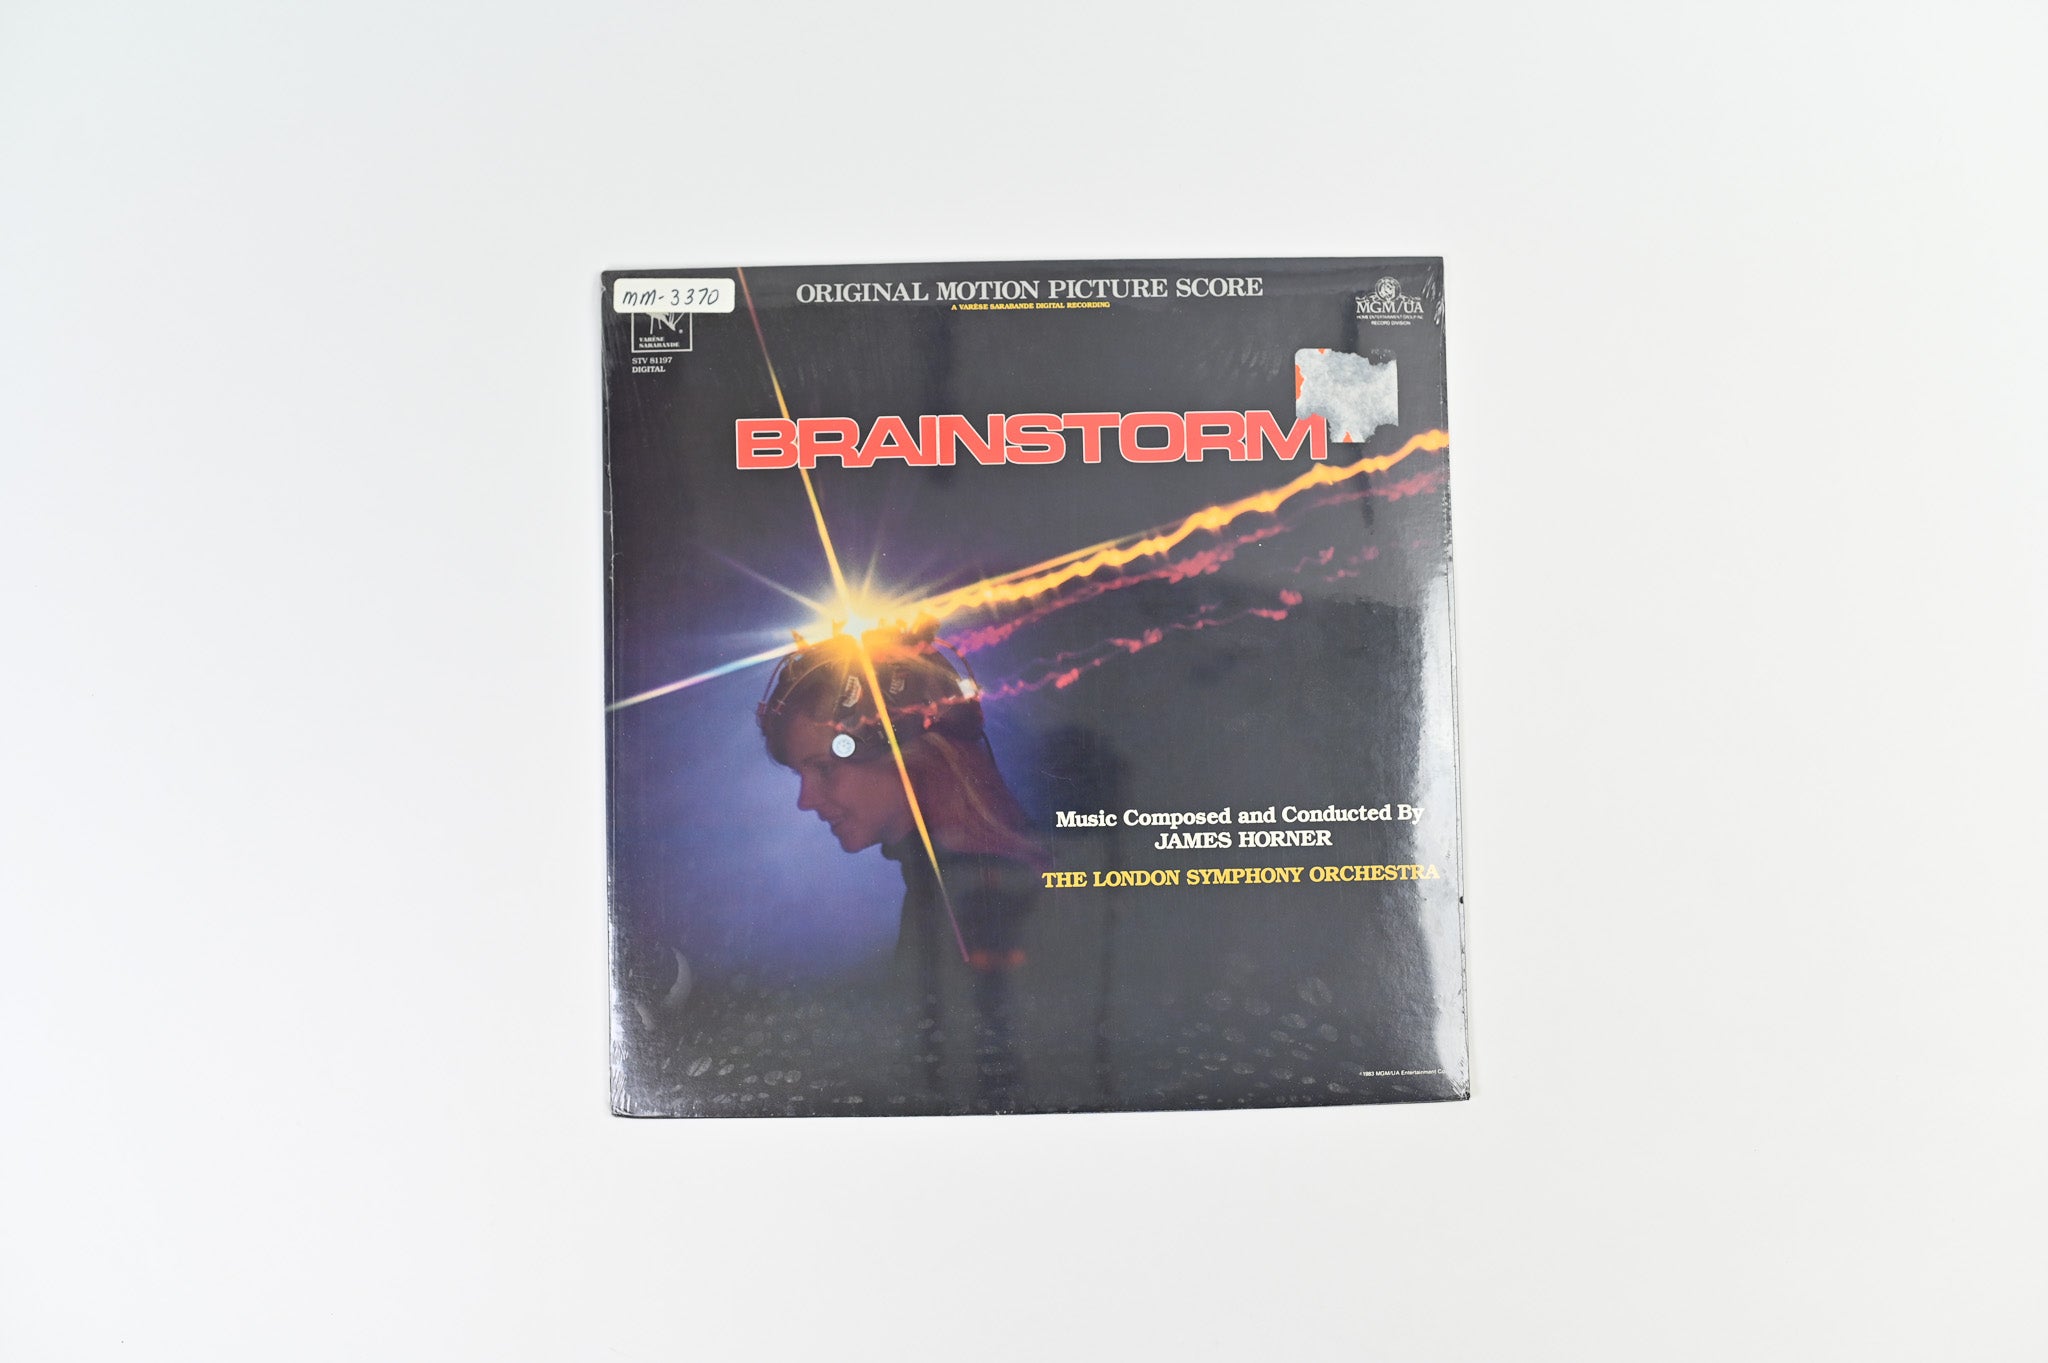 James Horner - Brainstorm (Original Motion Picture Score) on Varese Sarabande Sealed